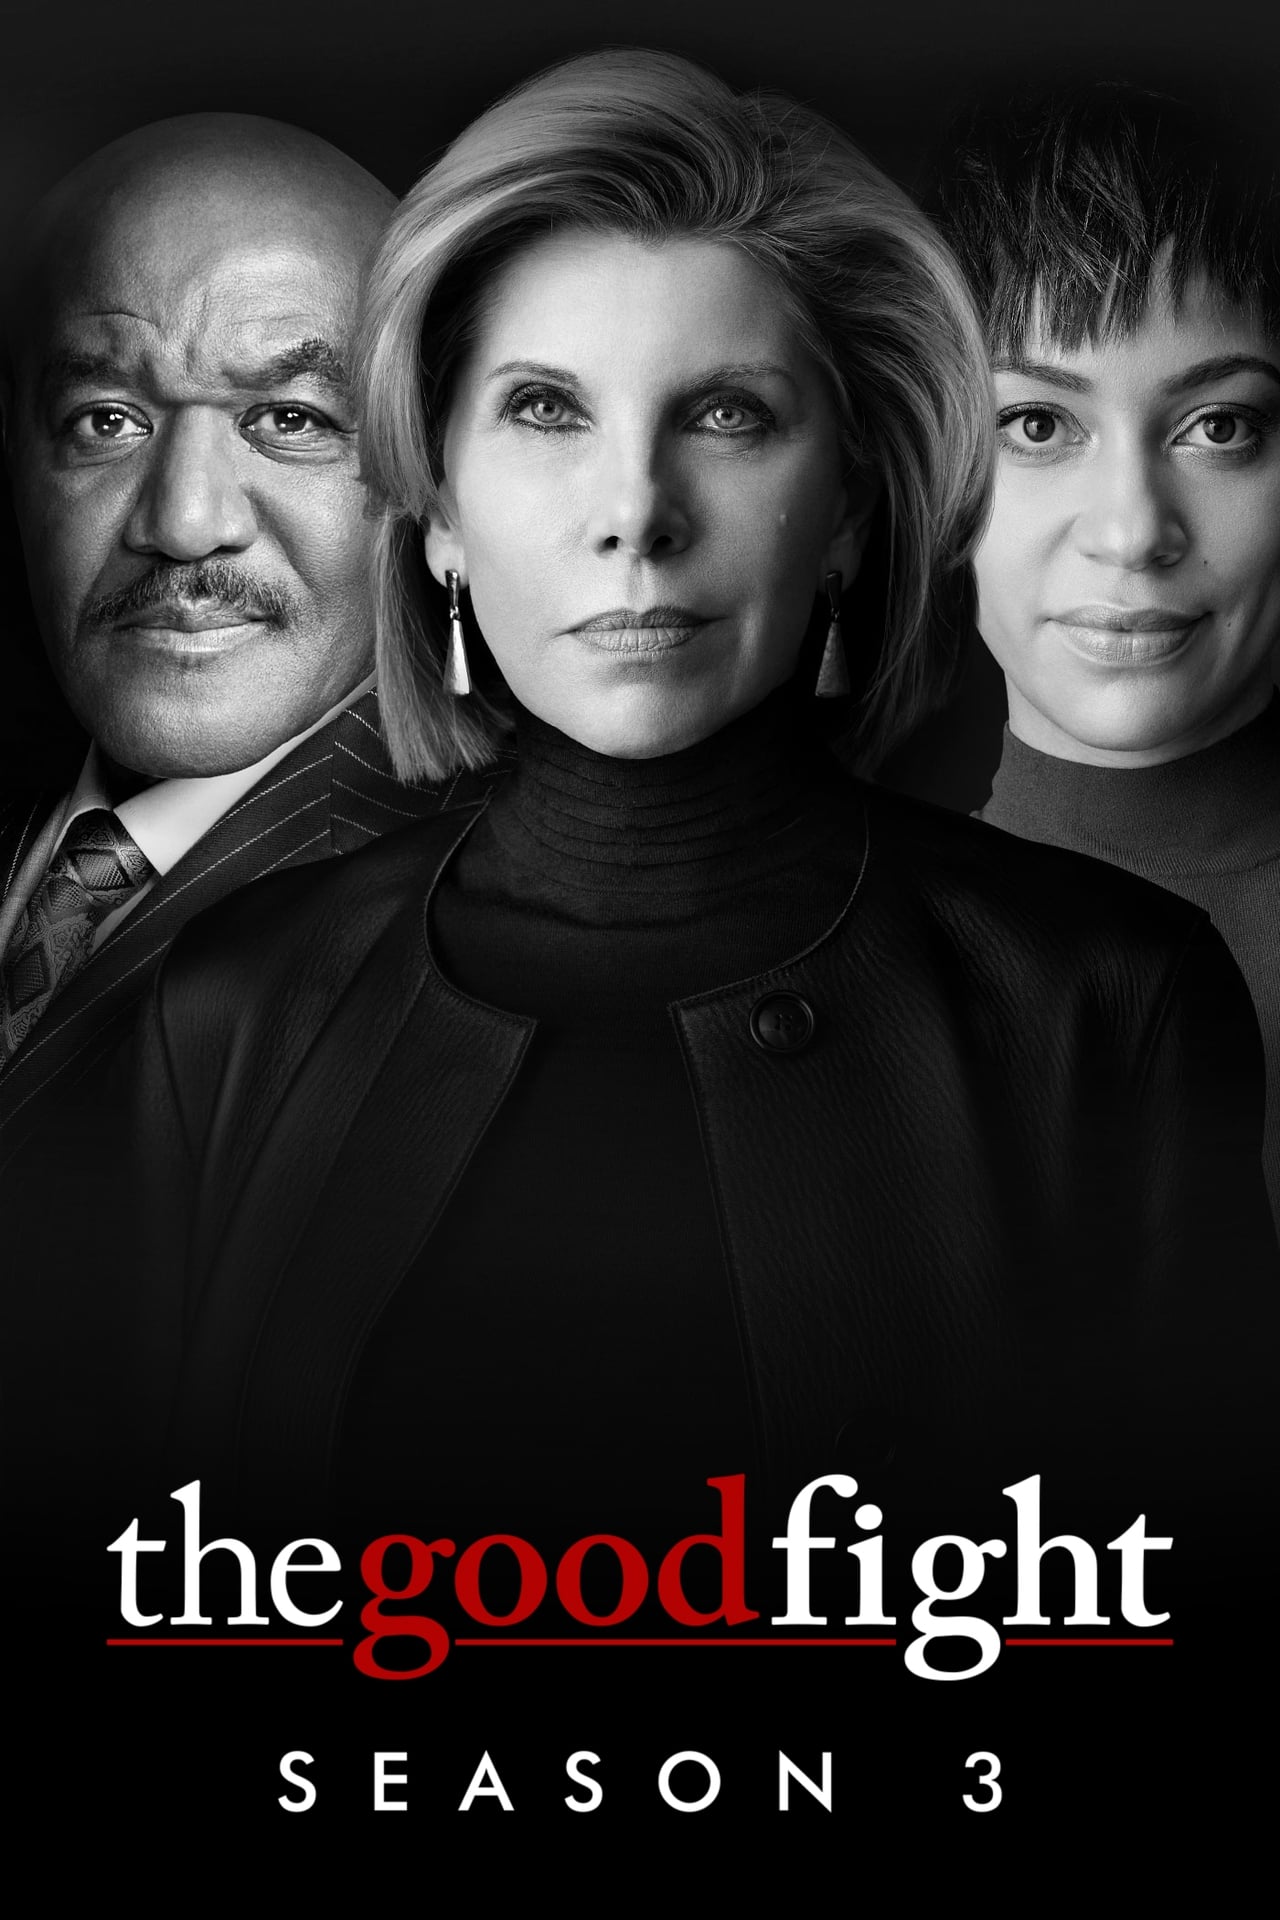 The Good Fight Season 3